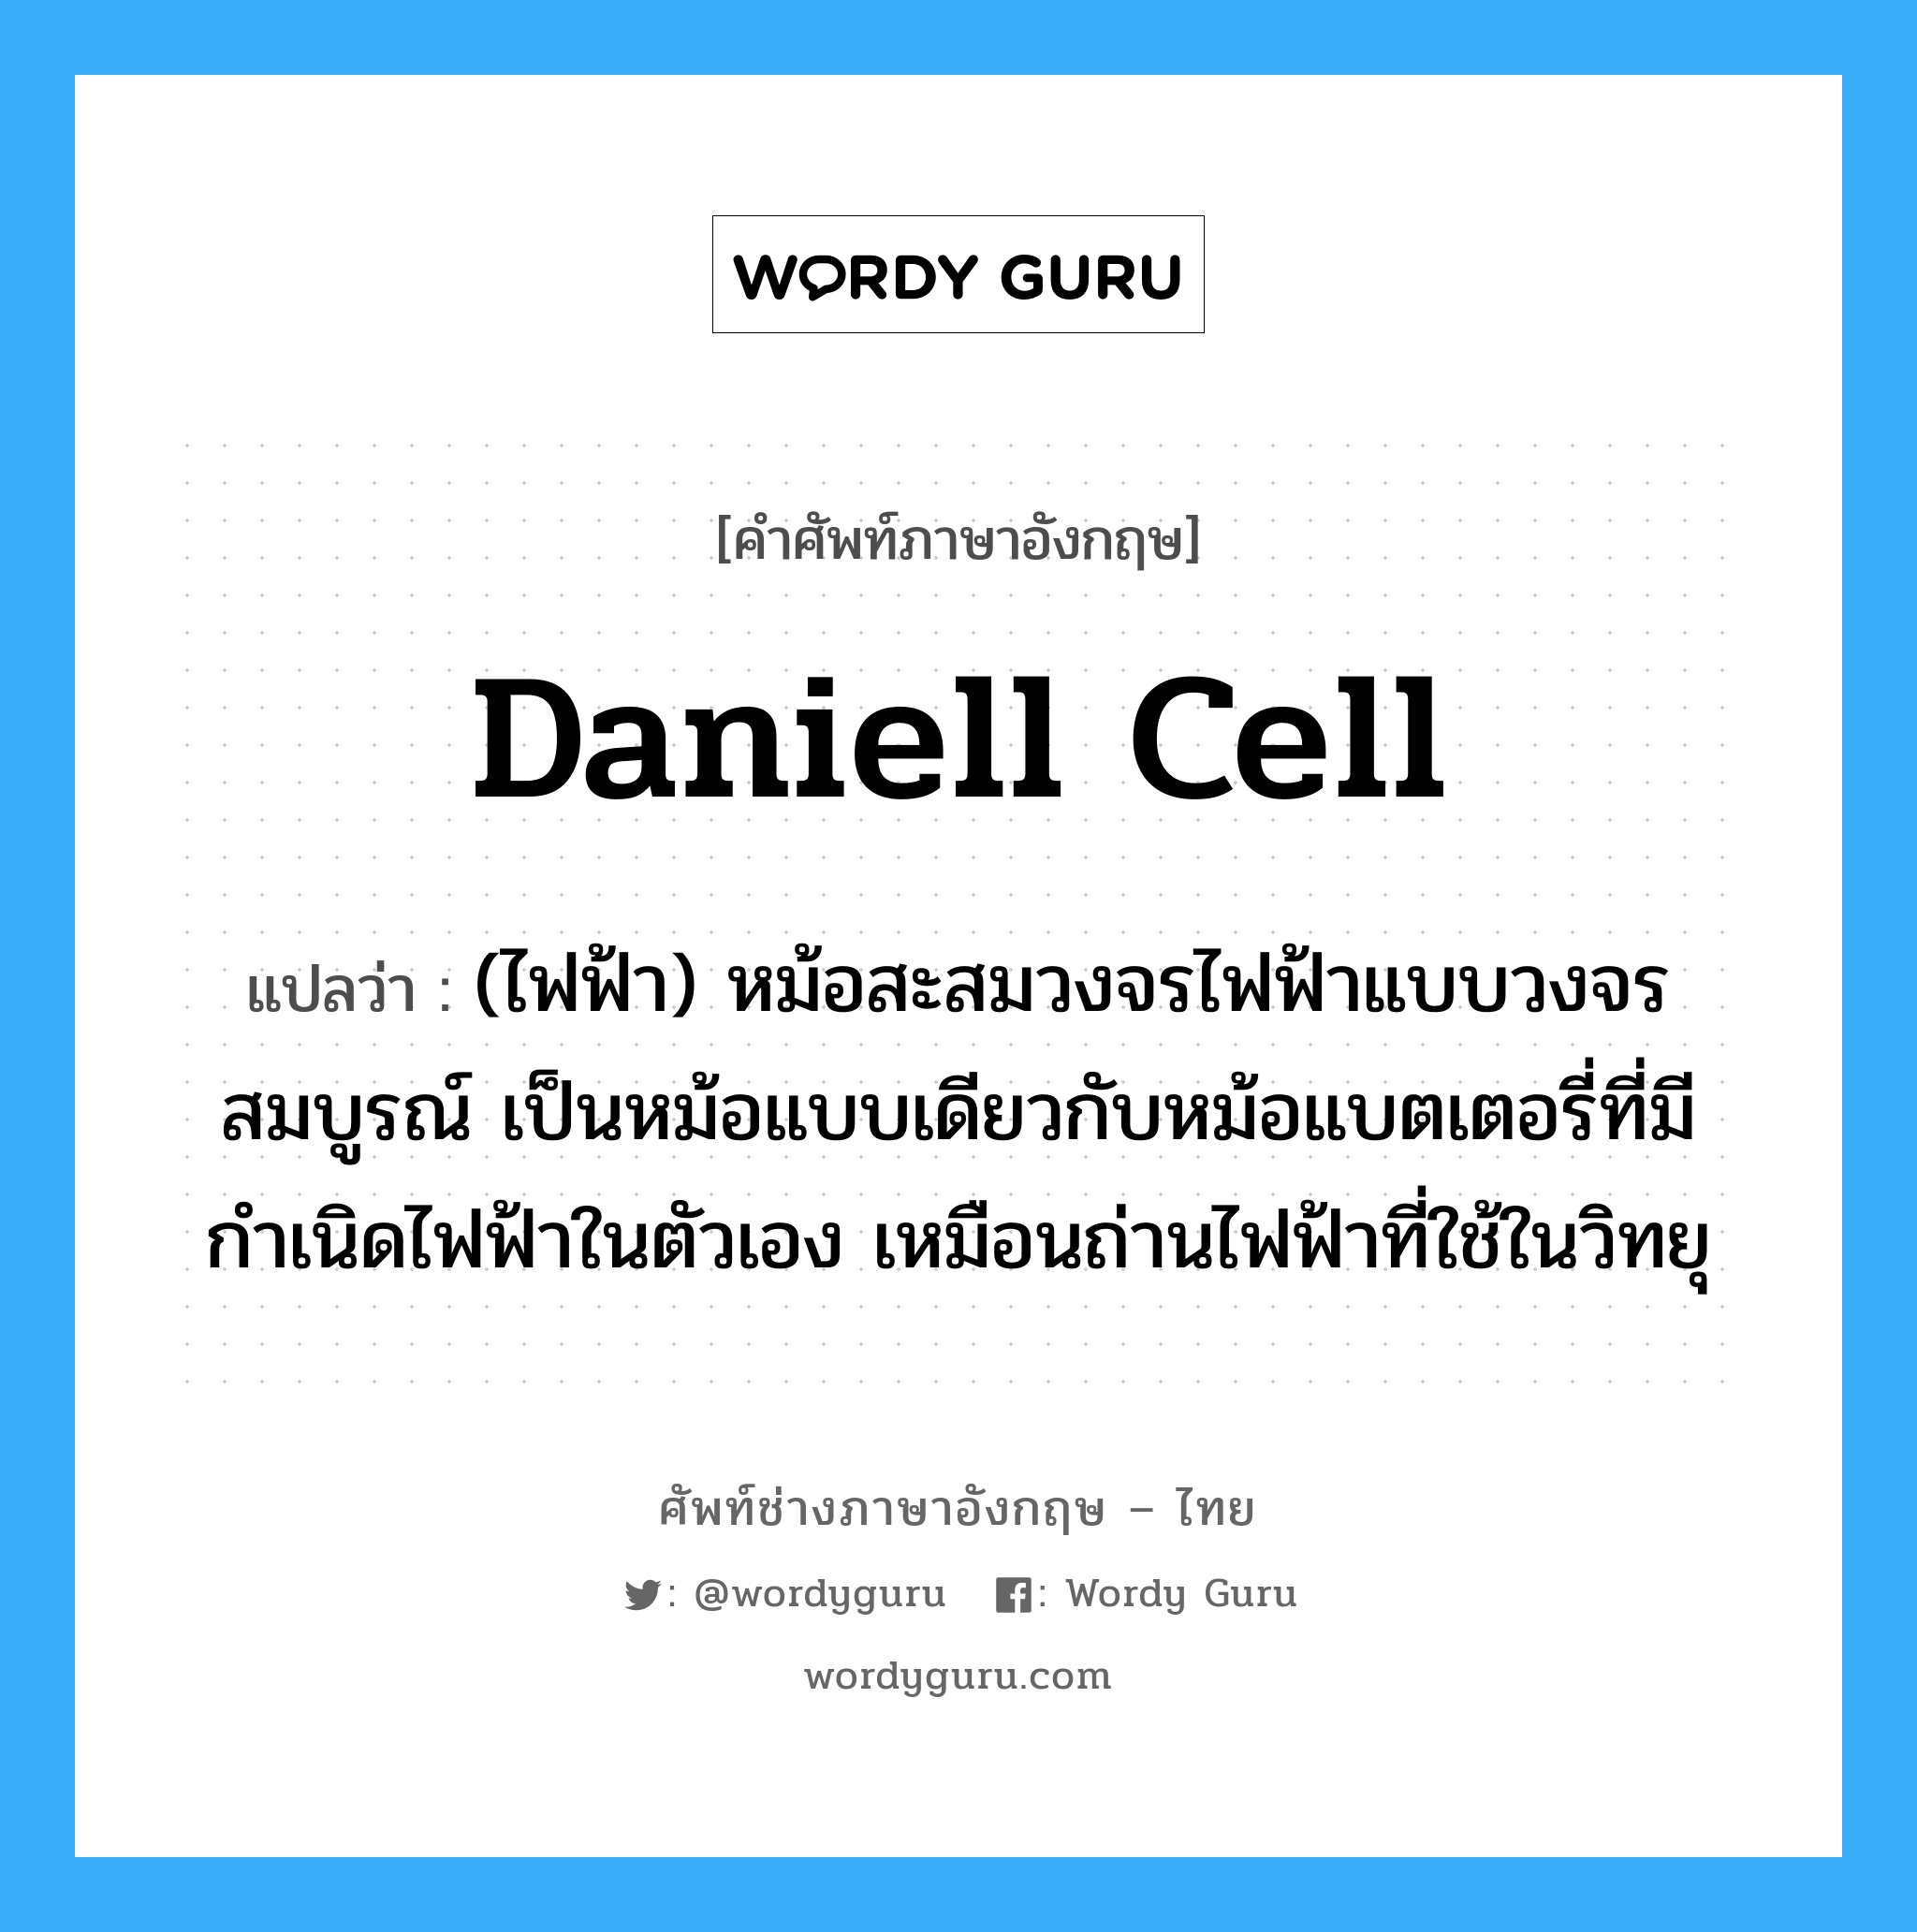 Daniell cell แปลว่า?, คำศัพท์ช่างภาษาอังกฤษ - ไทย Daniell cell คำศัพท์ภาษาอังกฤษ Daniell cell แปลว่า (ไฟฟ้า) หม้อสะสมวงจรไฟฟ้าแบบวงจรสมบูรณ์ เป็นหม้อแบบเดียวกับหม้อแบตเตอรี่ที่มีกำเนิดไฟฟ้าในตัวเอง เหมือนถ่านไฟฟ้าที่ใช้ในวิทยุ